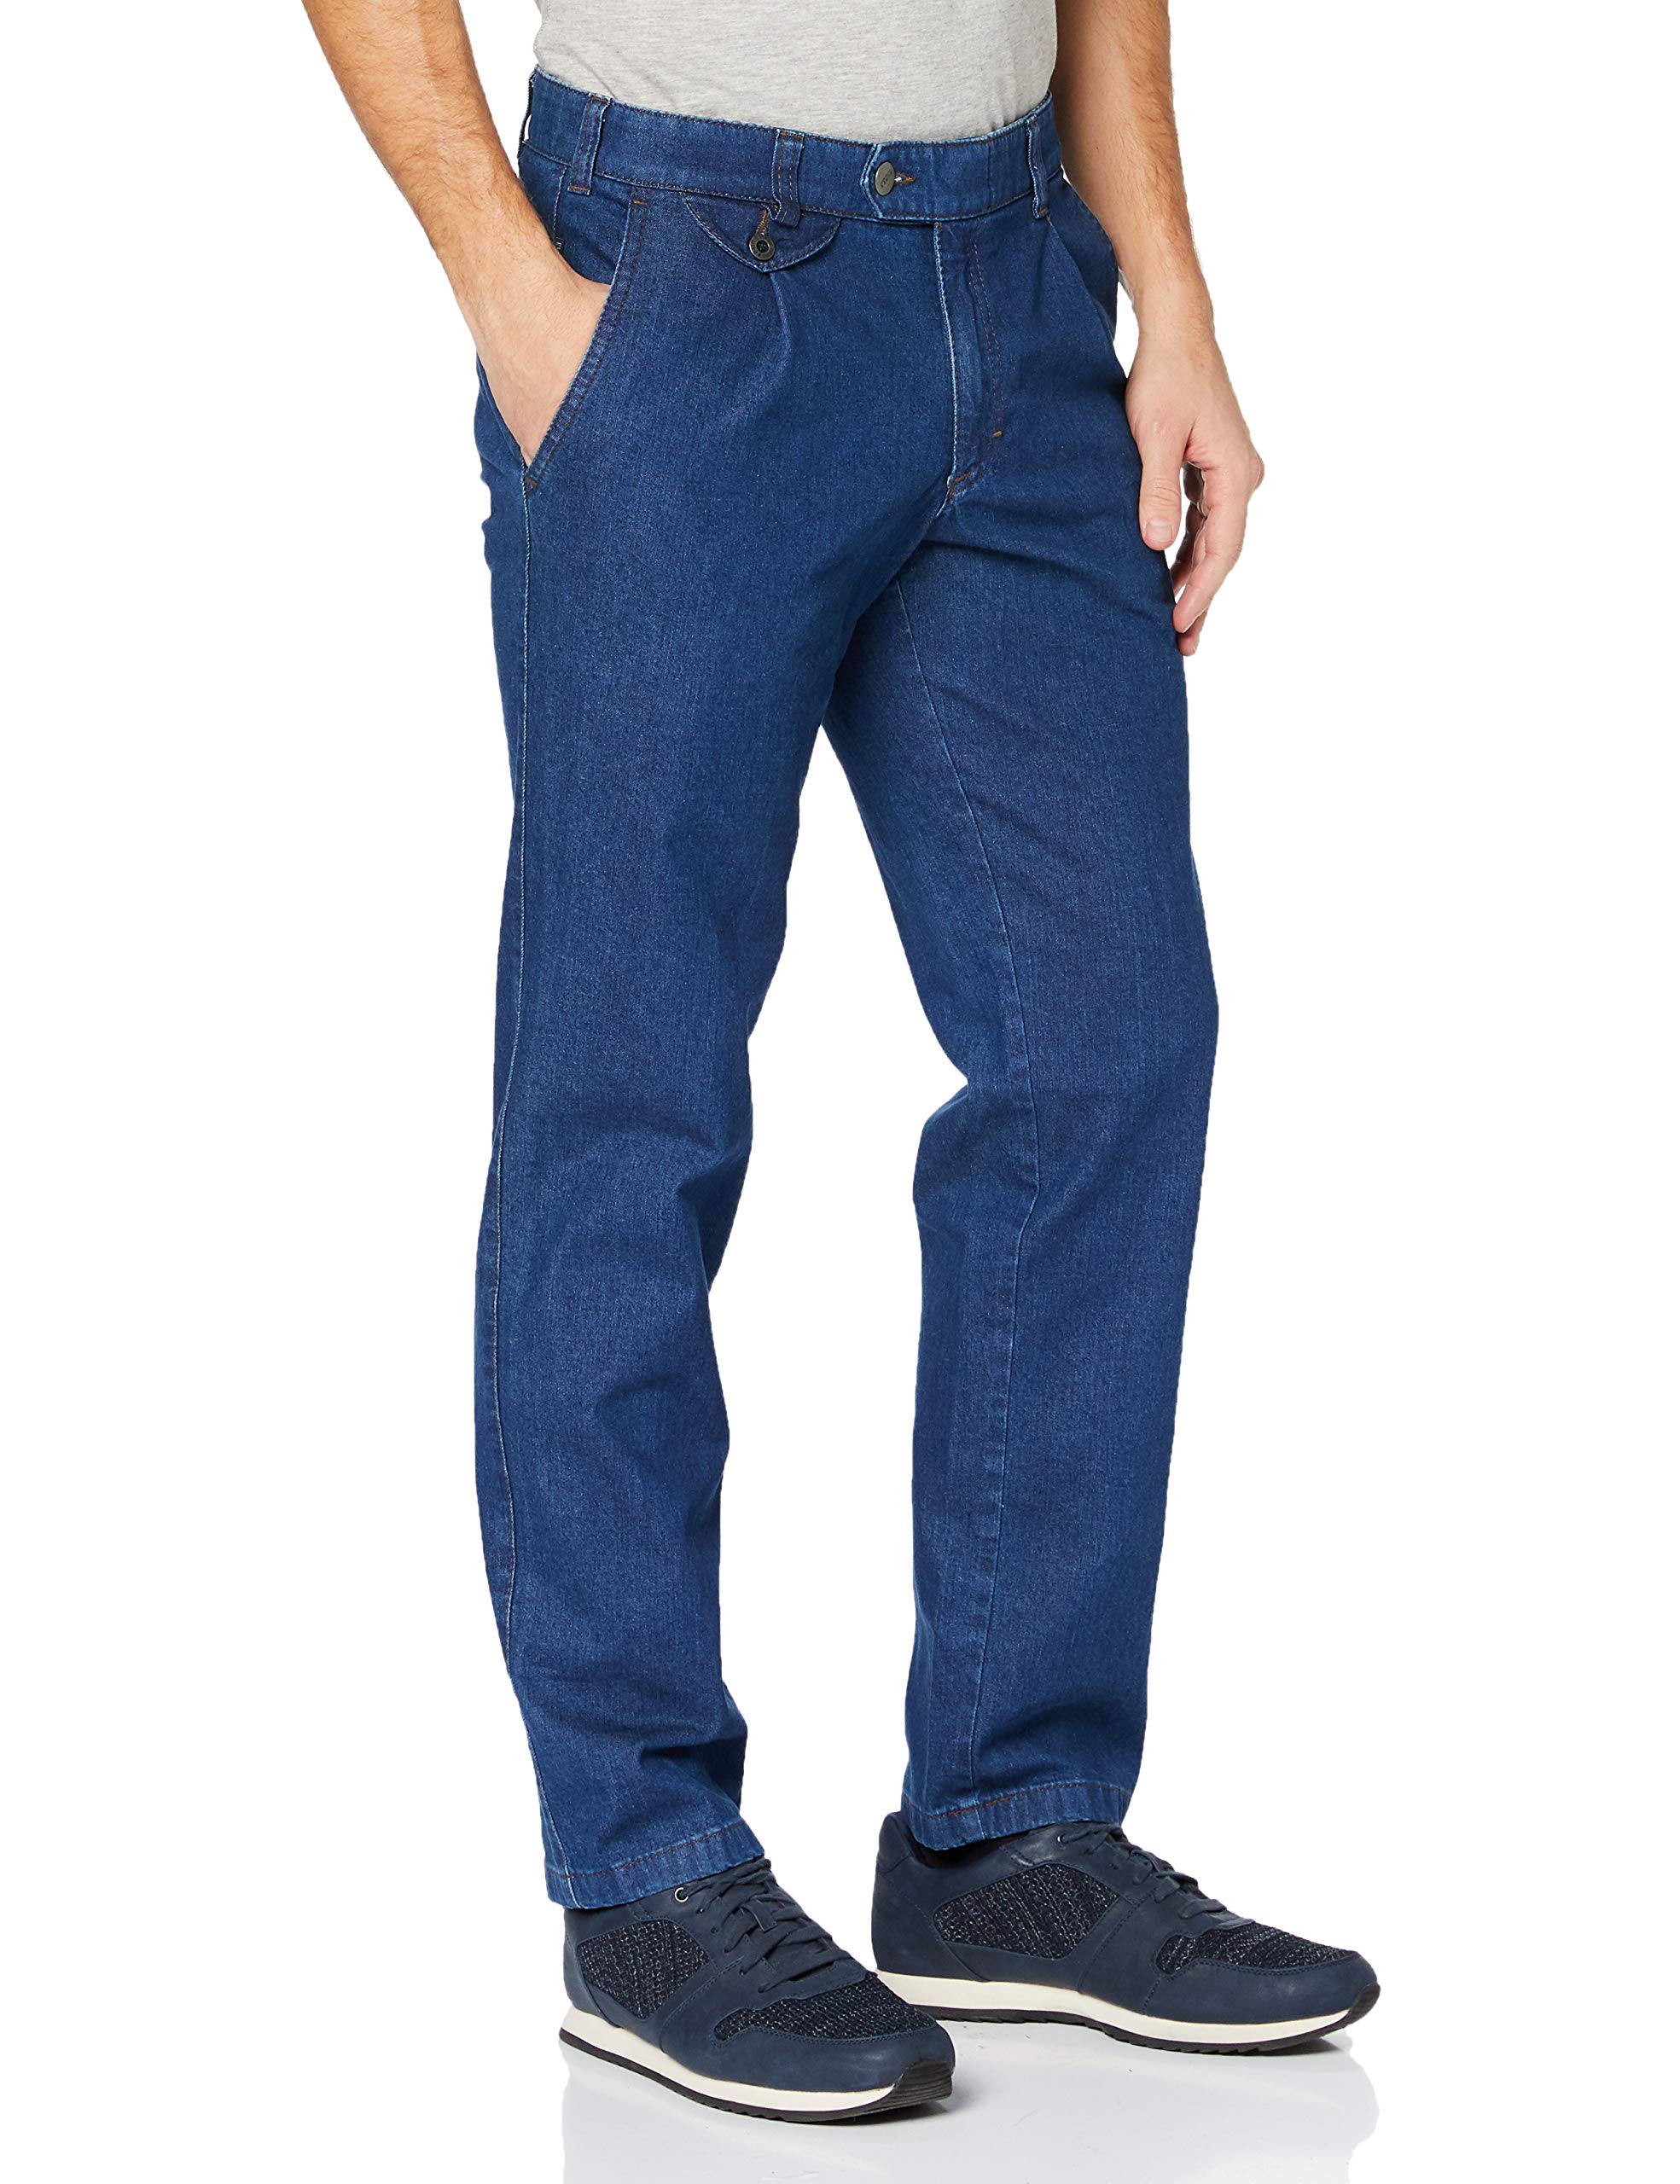 EUREX by BRAX Herren Ergo Cut Jeans Bundfalten-Hose Style Fred 321 Stretch, Blau 22, 48